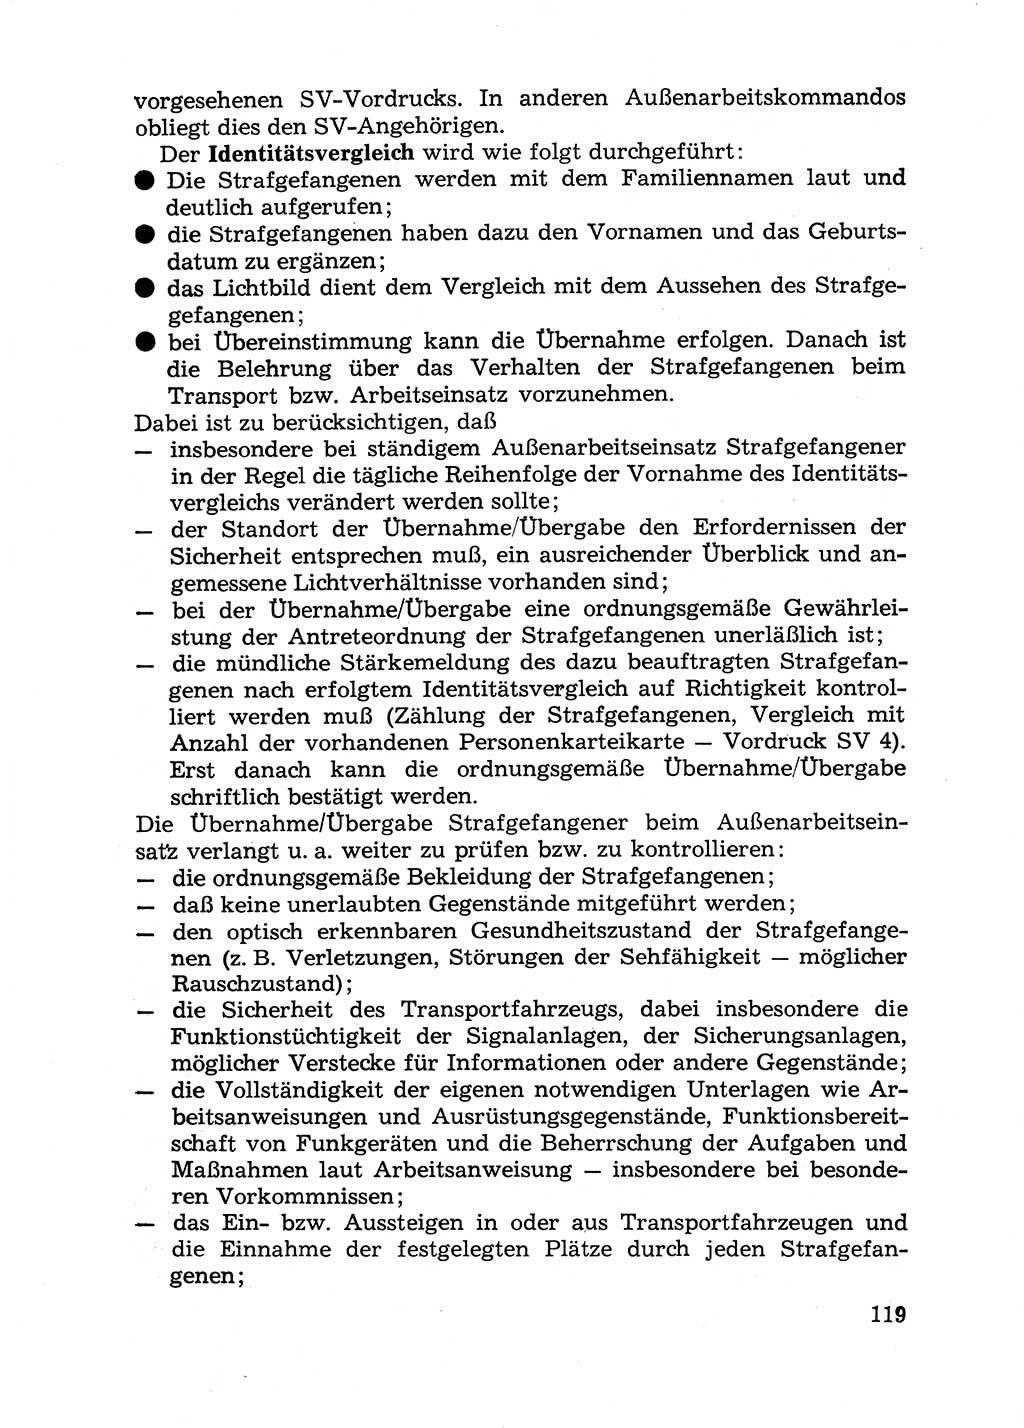 Handbuch für Betriebsangehörige, Abteilung Strafvollzug (SV) [Ministerium des Innern (MdI) Deutsche Demokratische Republik (DDR)] 1981, Seite 119 (Hb. BA Abt. SV MdI DDR 1981, S. 119)